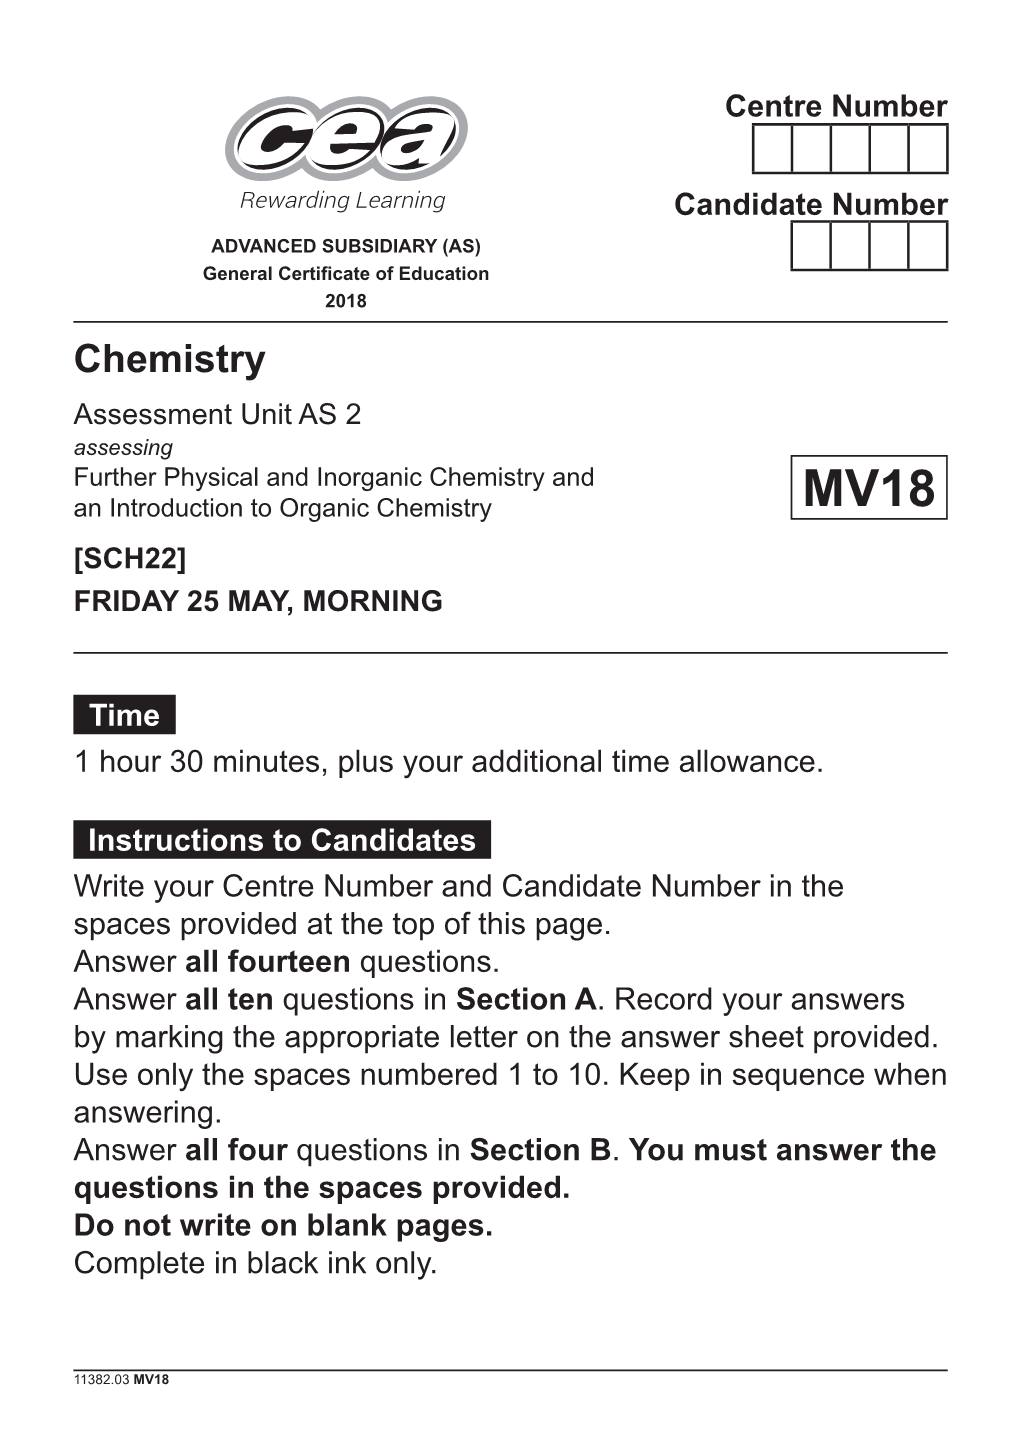 11382.03 GCE Chemistry AS 2 (MV18)